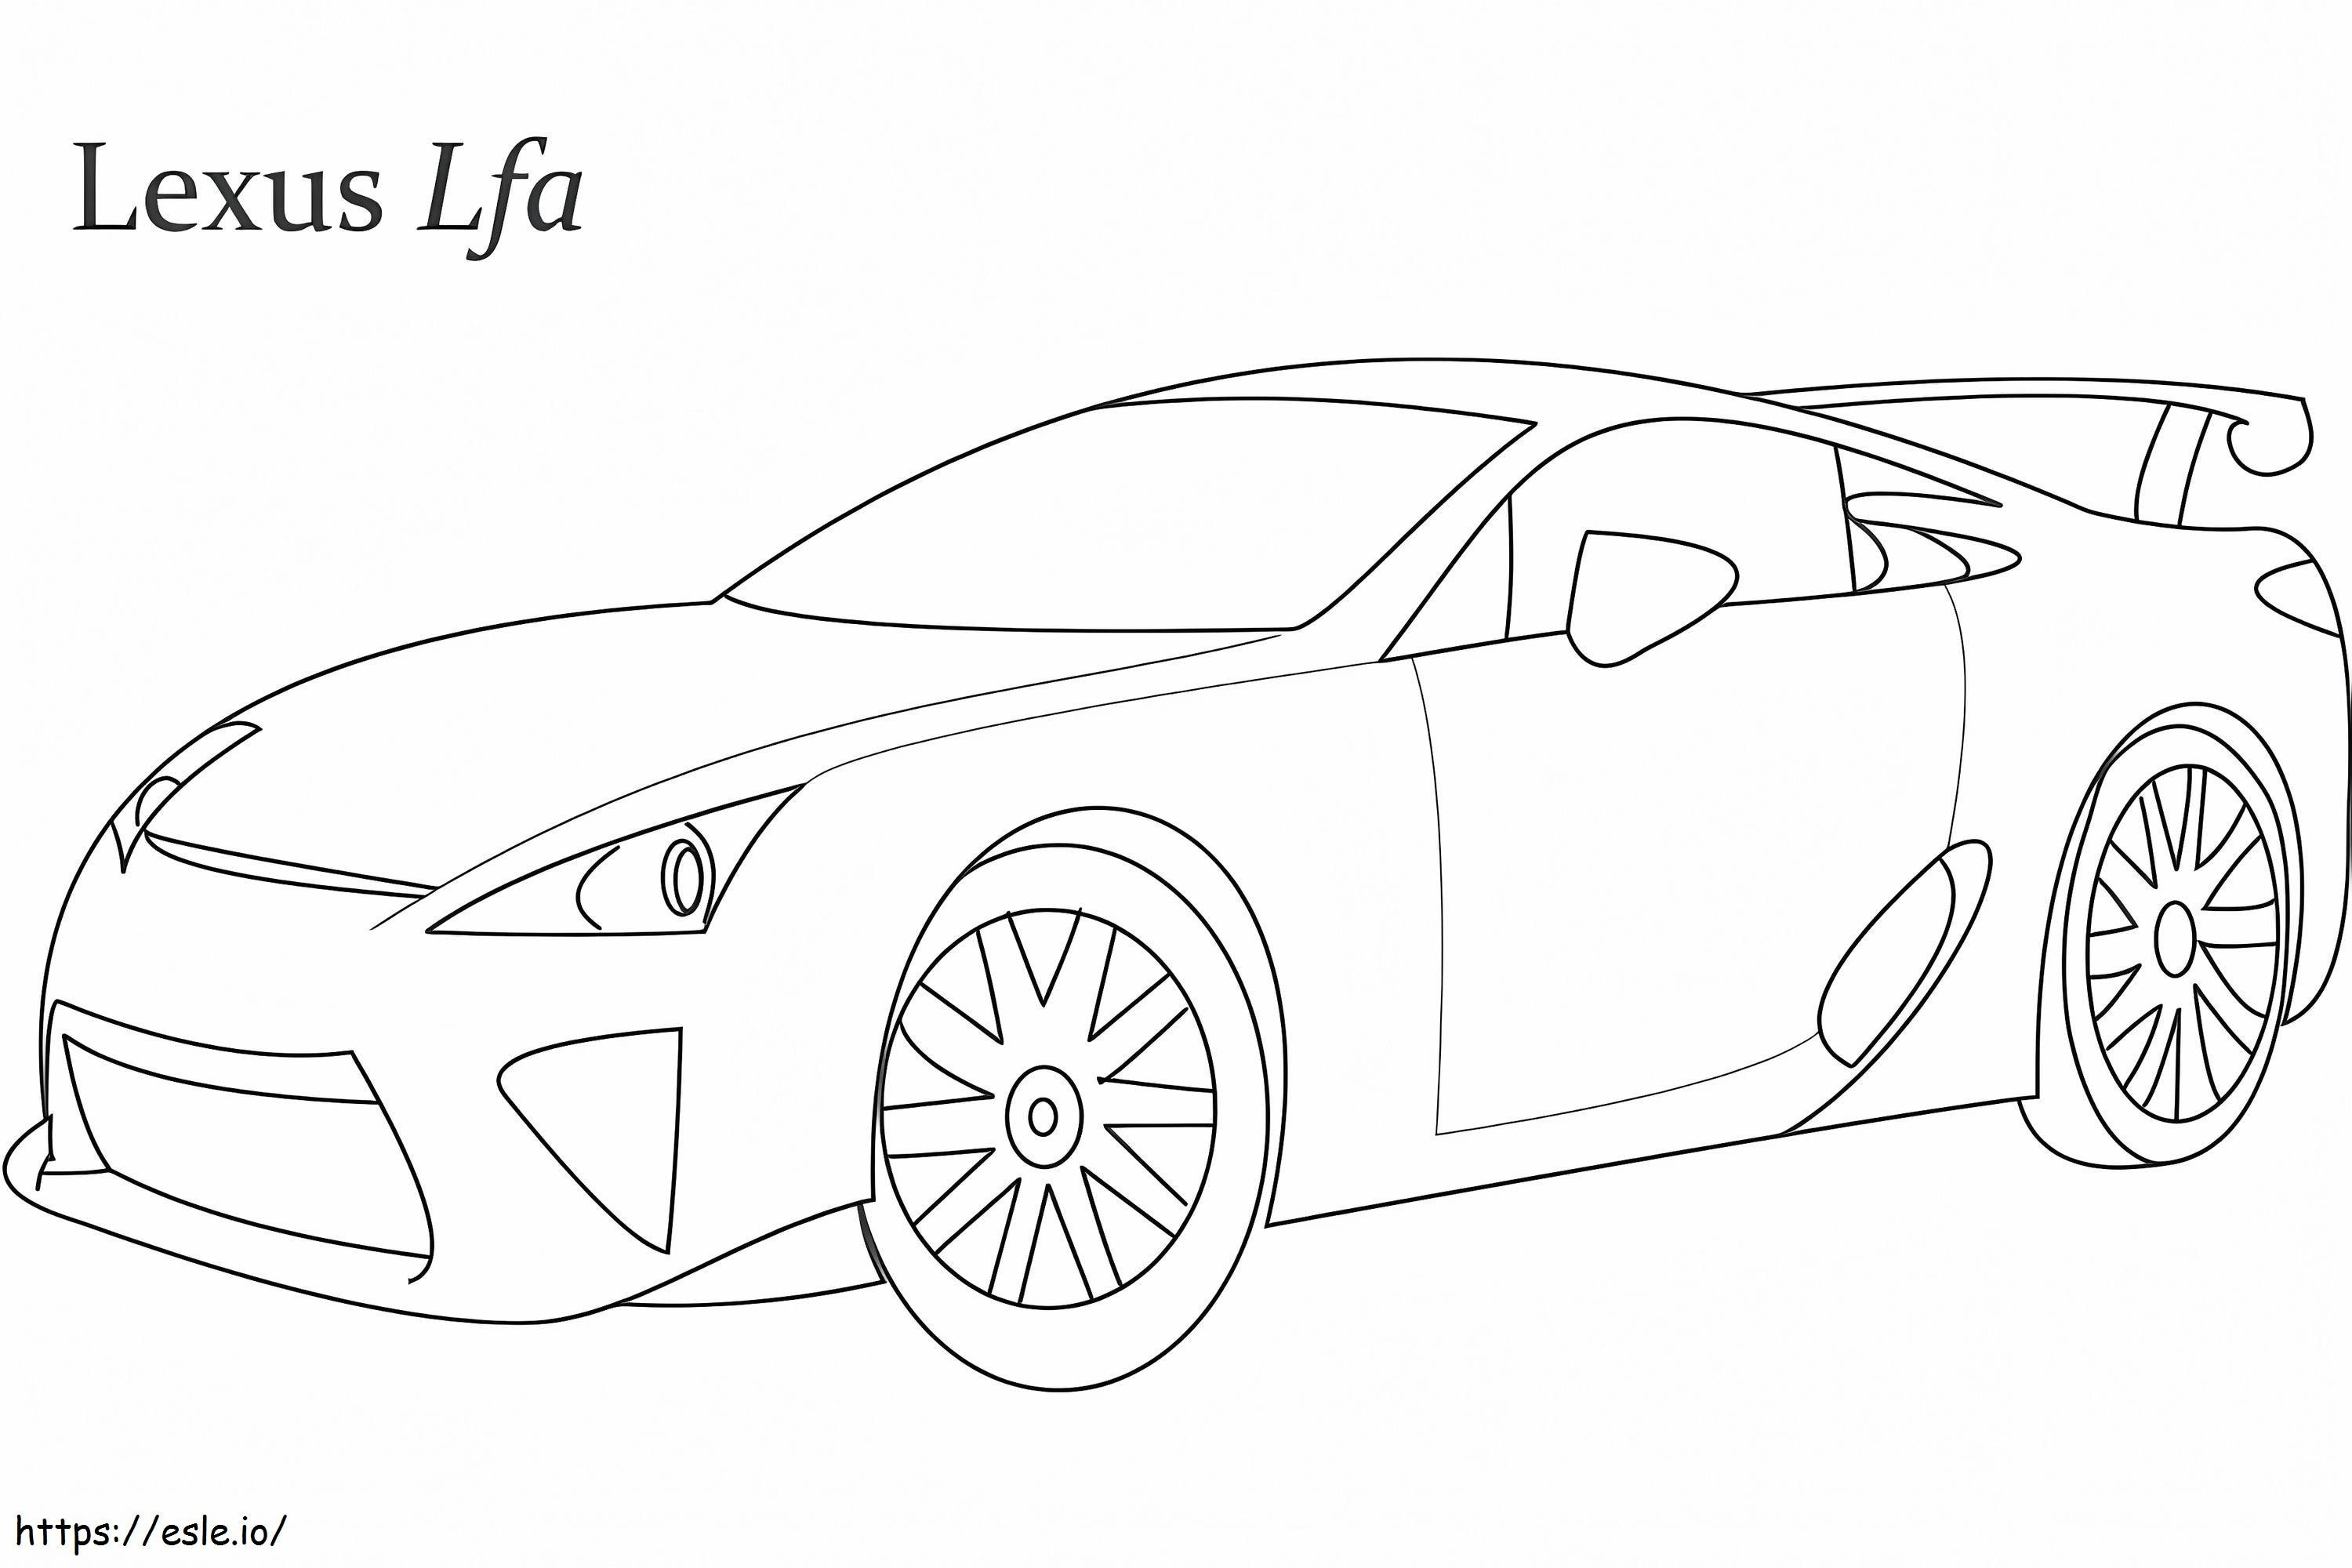 Samochód wyścigowy Lexus Lfa kolorowanka